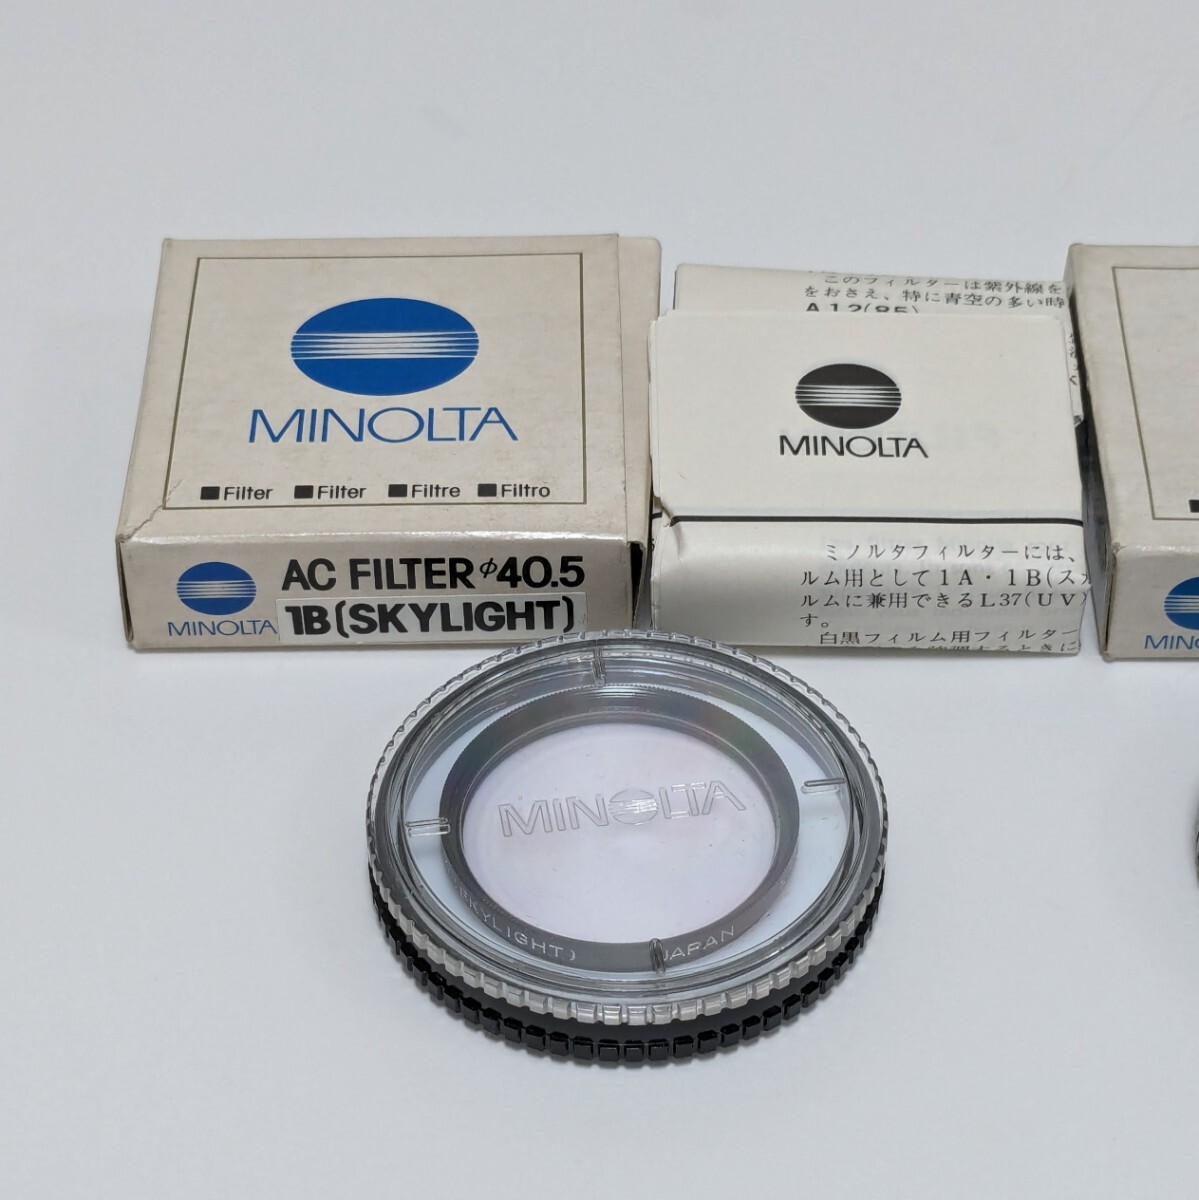 MINOLTA ミノルタ AC フィルター 2個セット 40.5mm 1B SKY LIGHT ND 4Xの画像2